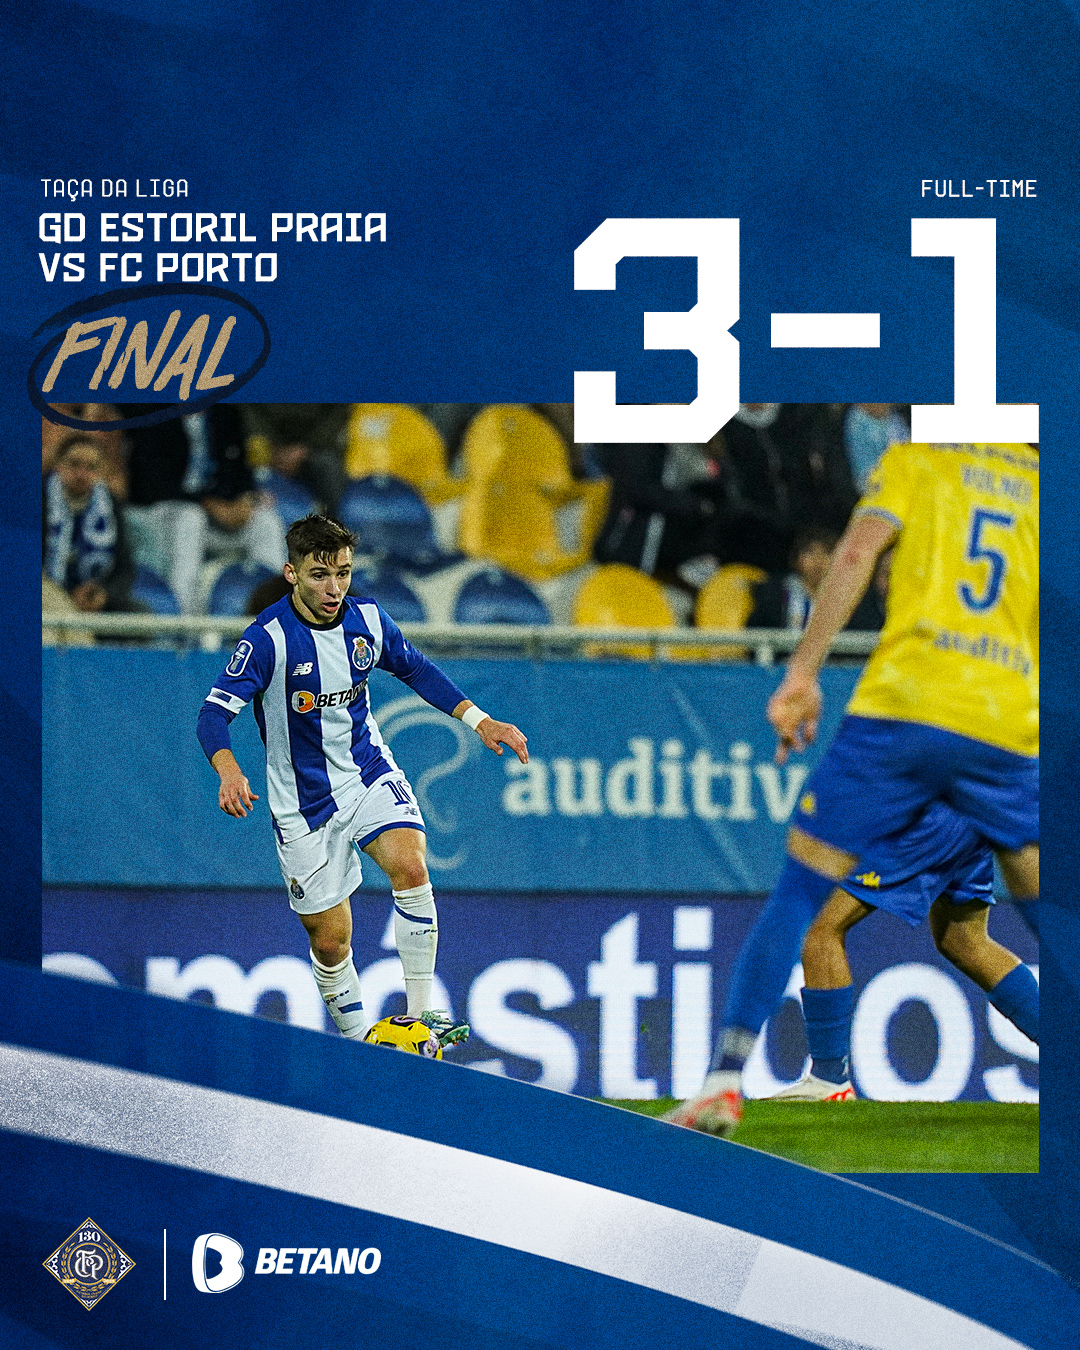 FC Porto - Final de Jogo / End of the match / Final del Partido